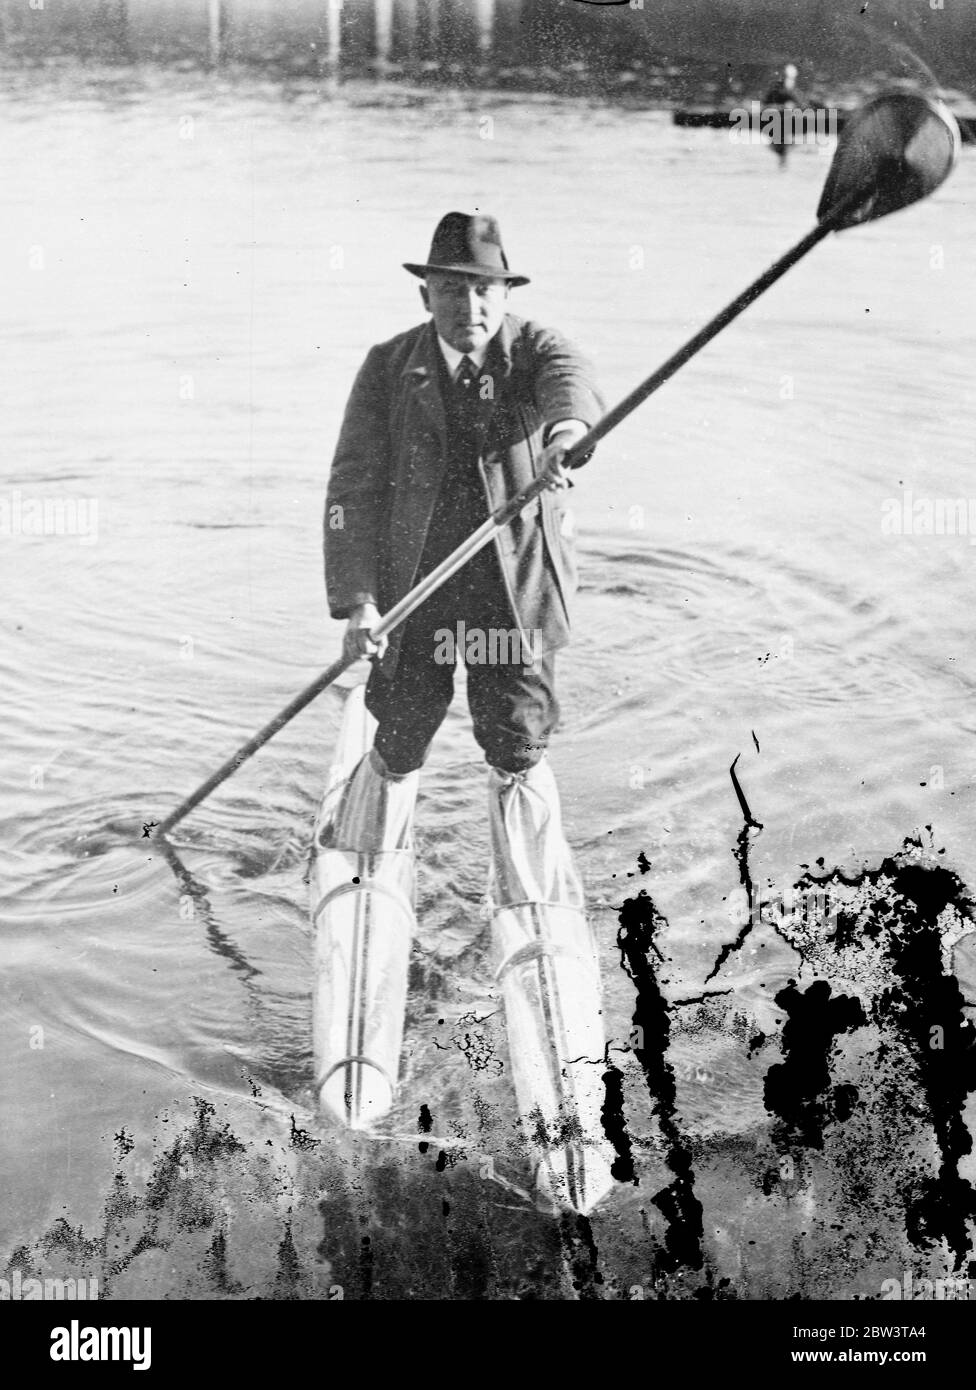 Deutsch erfindet Metall Wasserski . Deckt 15 Meilen in vier Stunden . Herr Neumann demonstriert seine neuen Wasserski. 16. Oktober 1935 Stockfoto